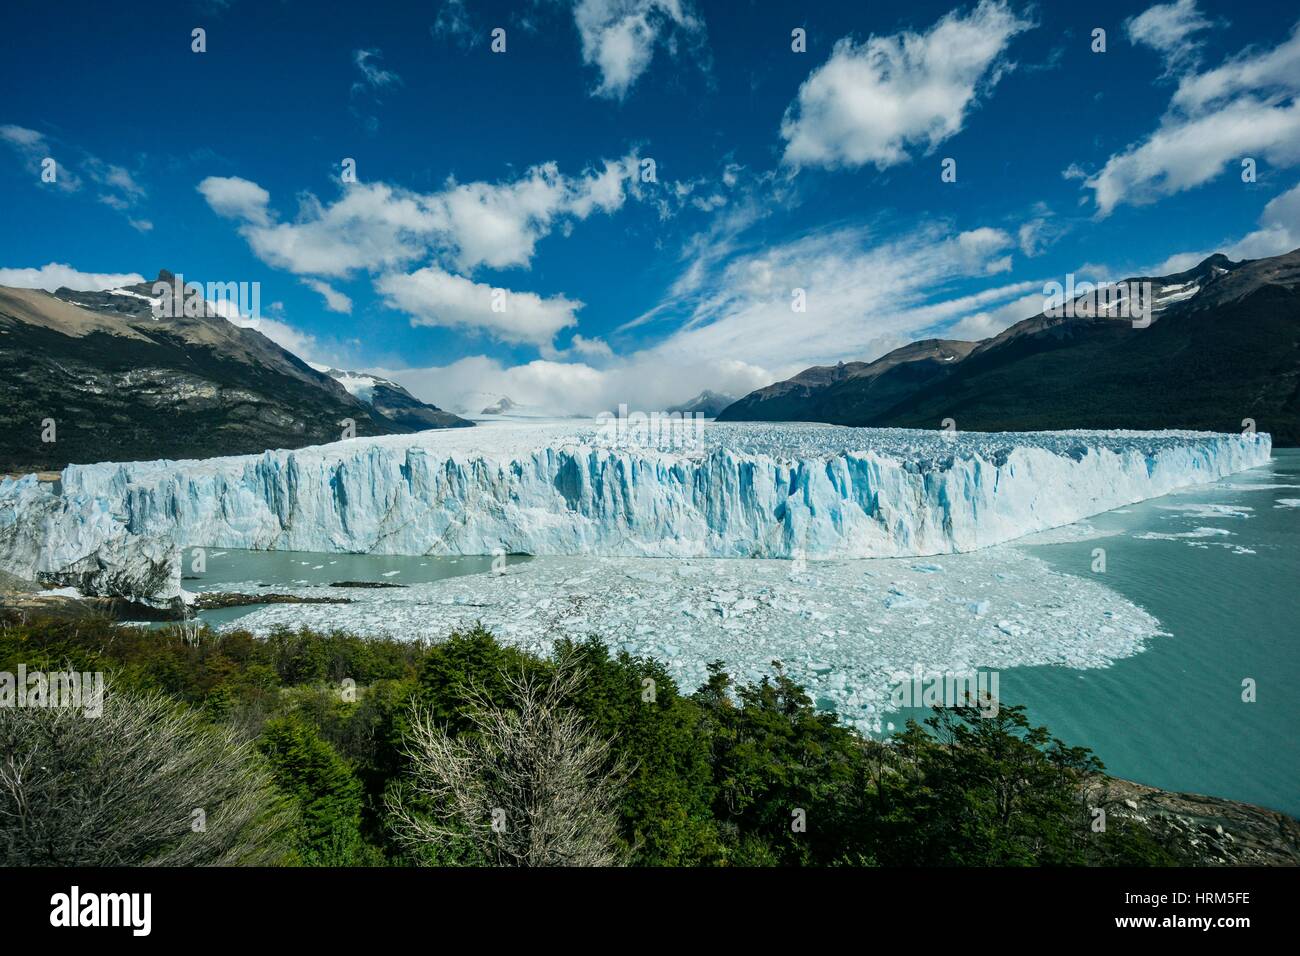 Argentina, Patagonia, Santa Cruz province, Los Glaciares National Park, Perito Moreno Glacier Stock Photo